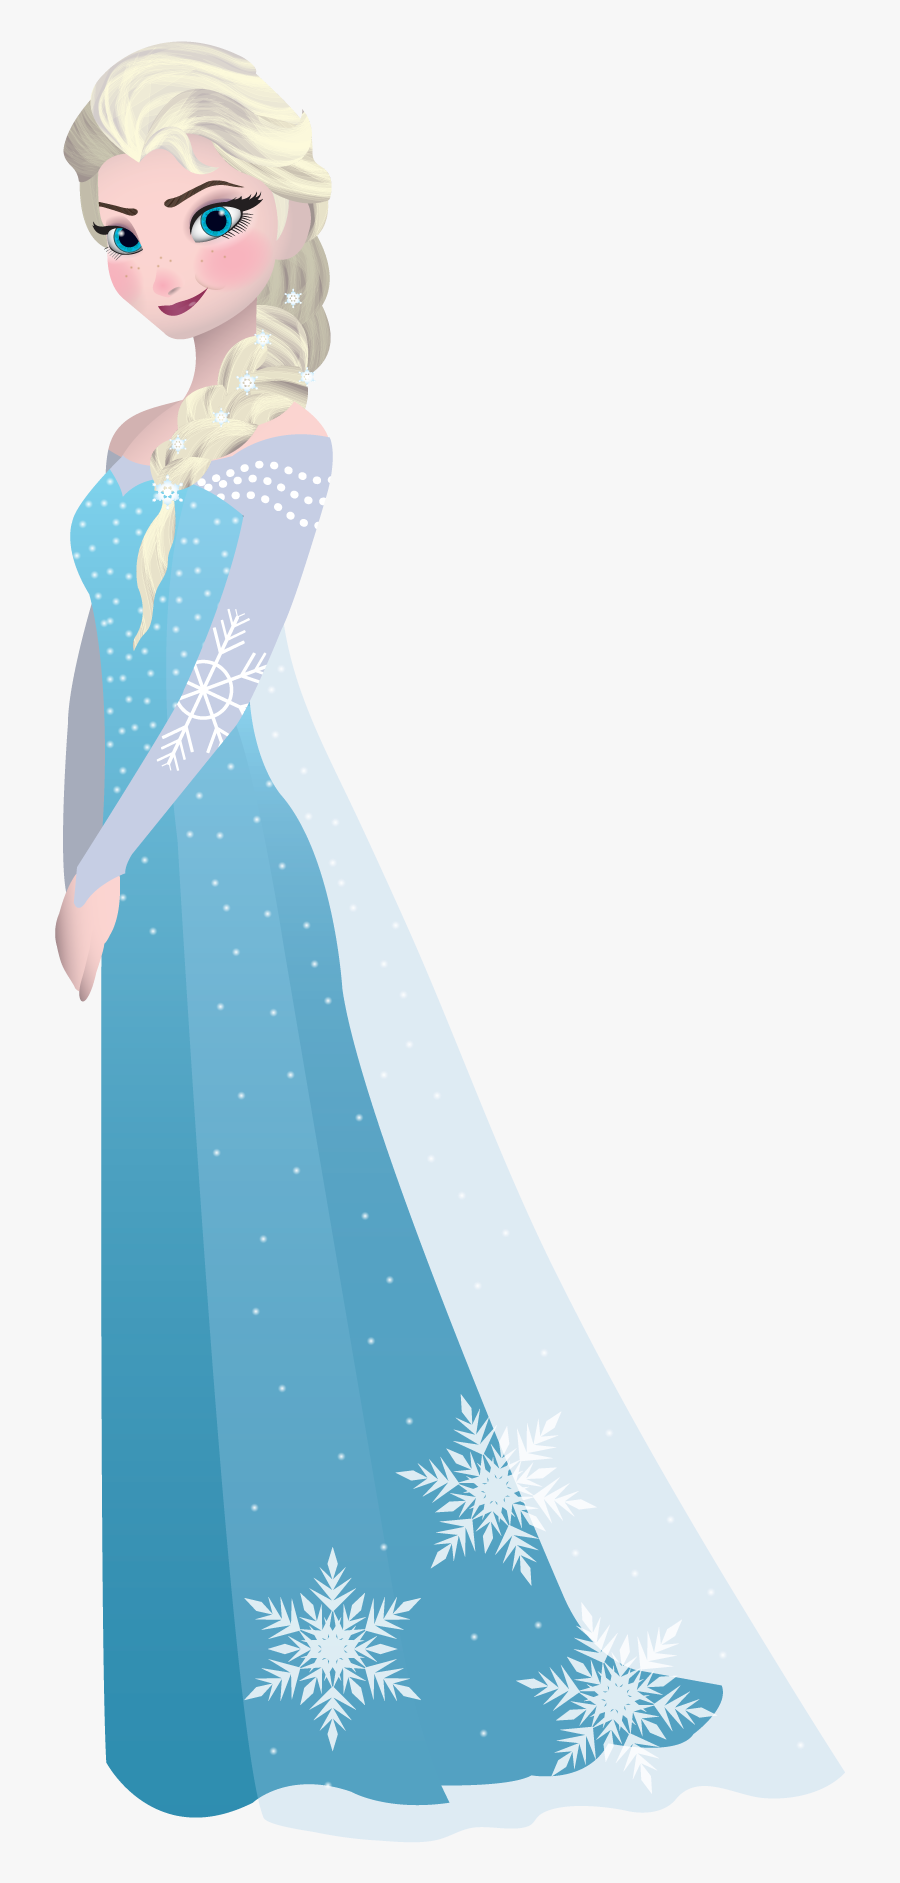 Transparent Elsa Silhouette Png, Transparent Clipart